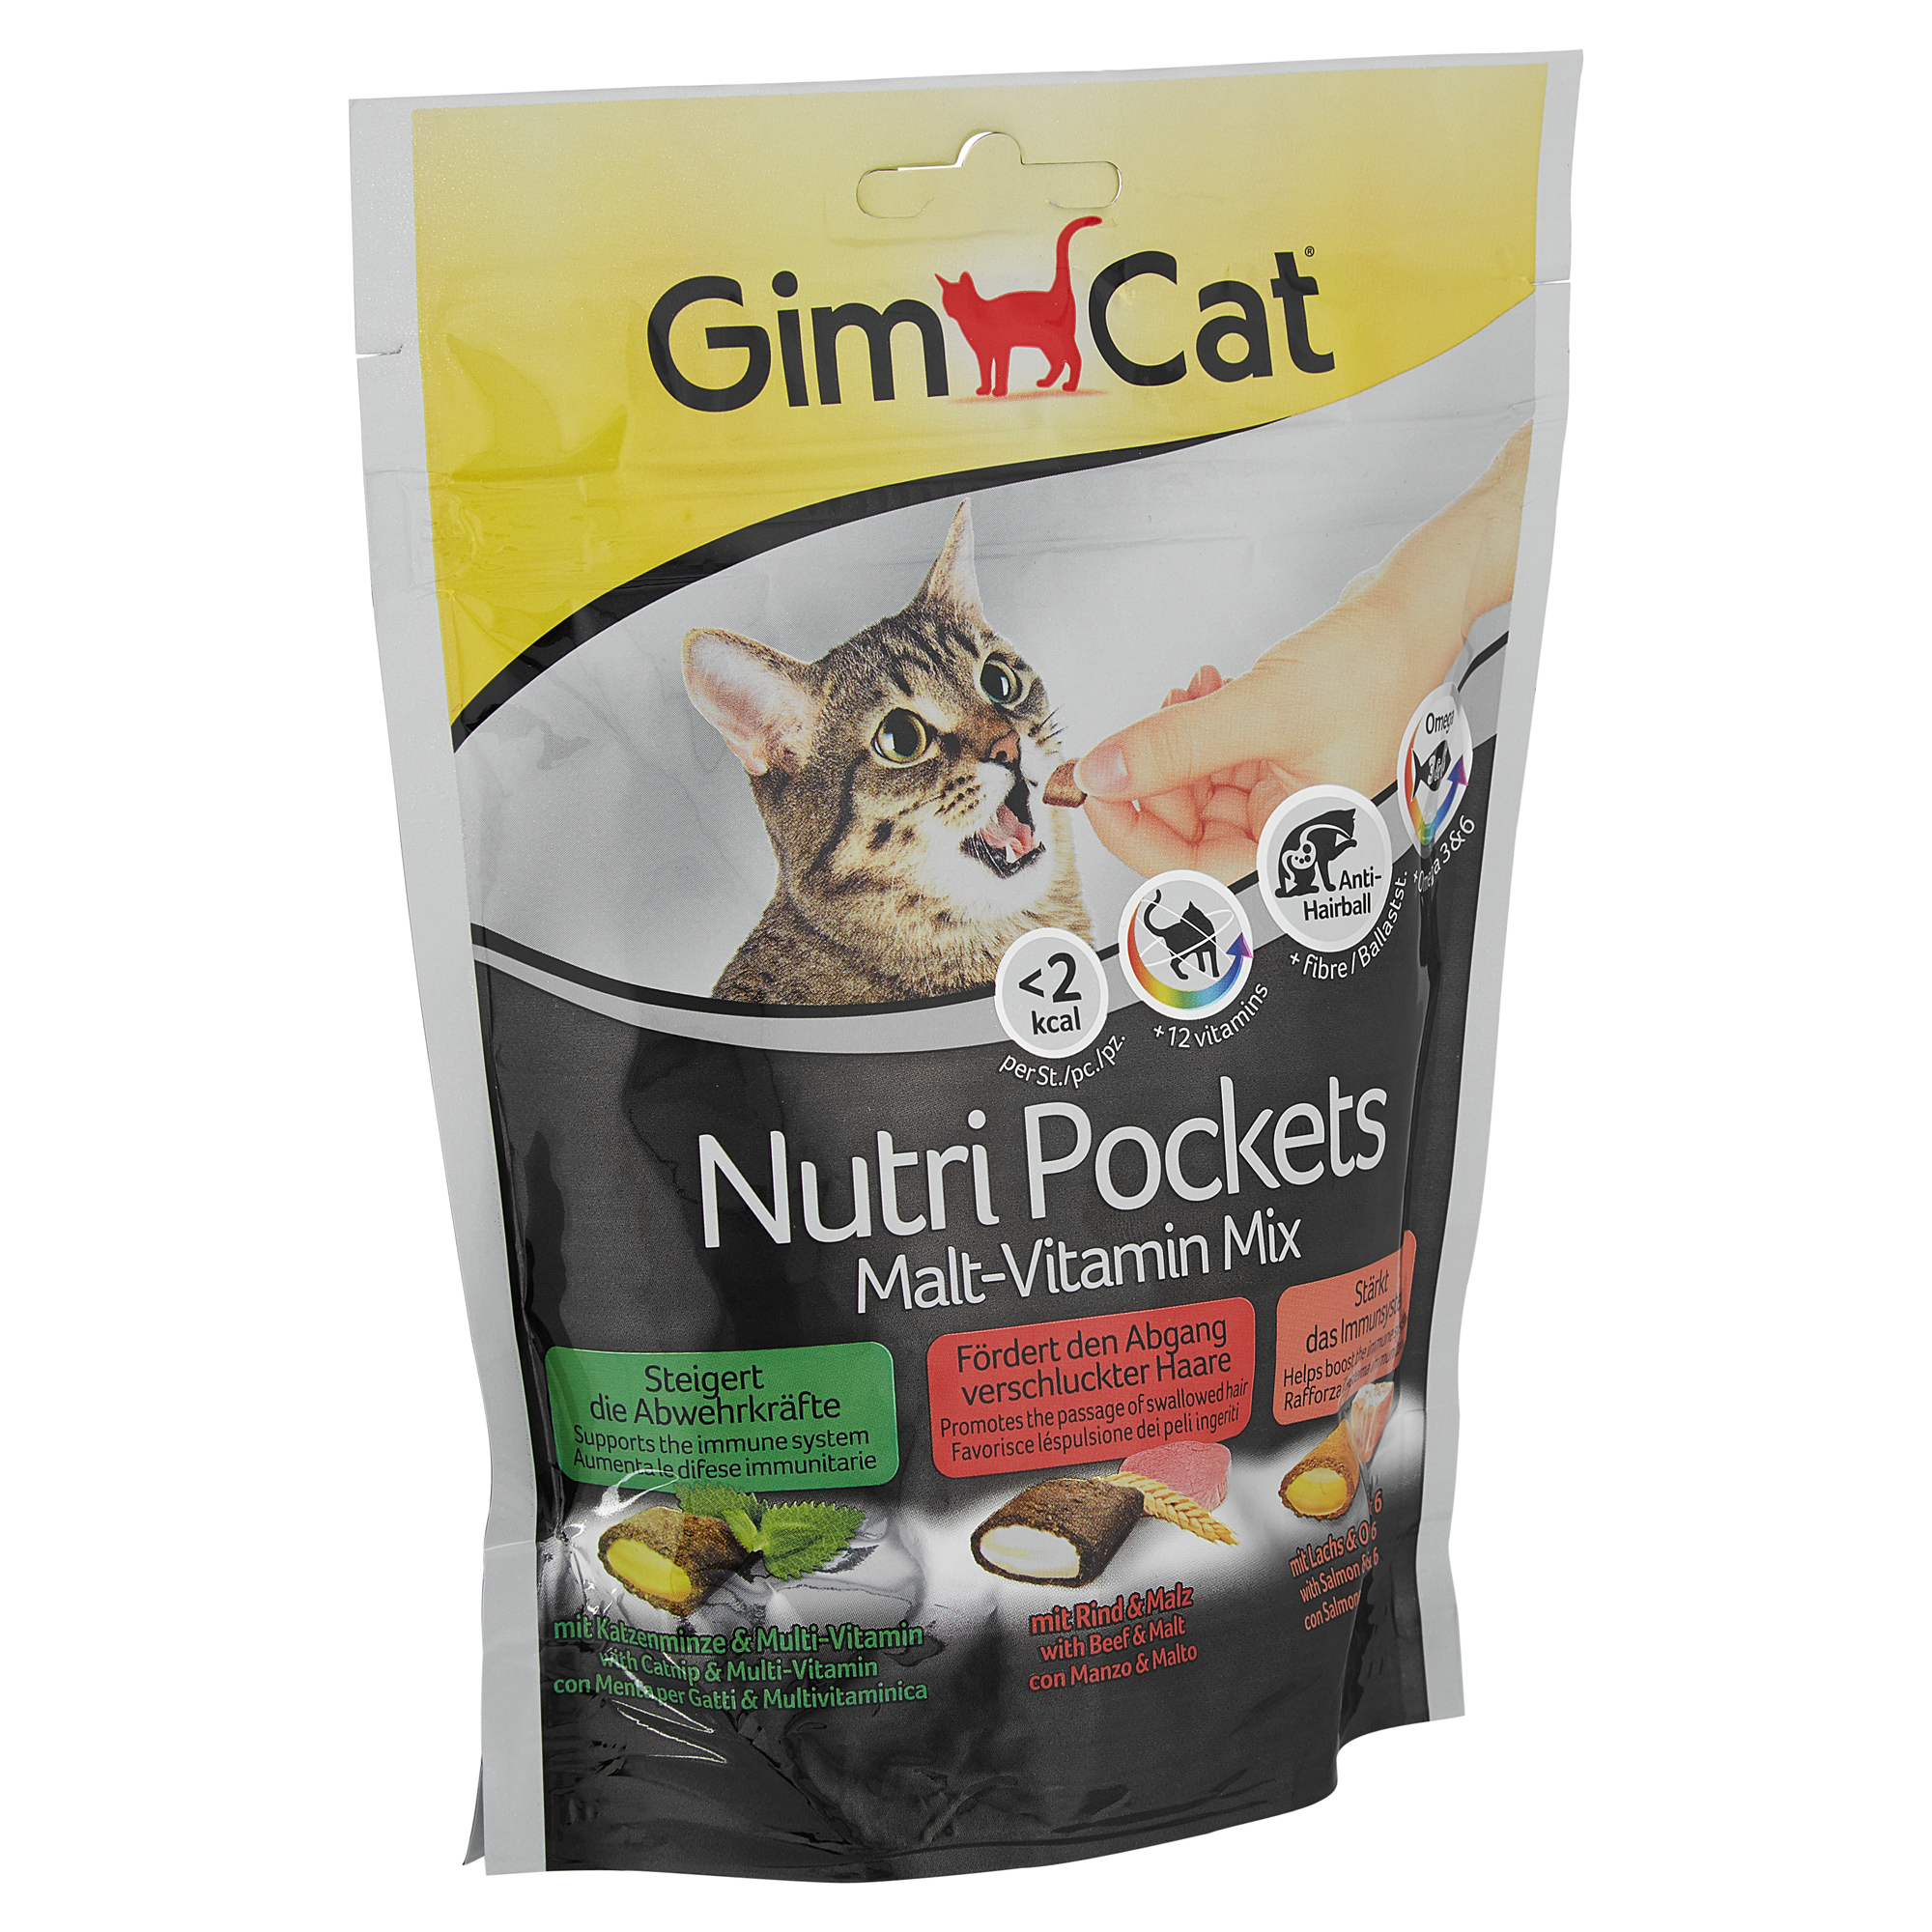 Katzensnack "Nutri Pockets" Malt-Vitamin-Mix 150 g + product picture